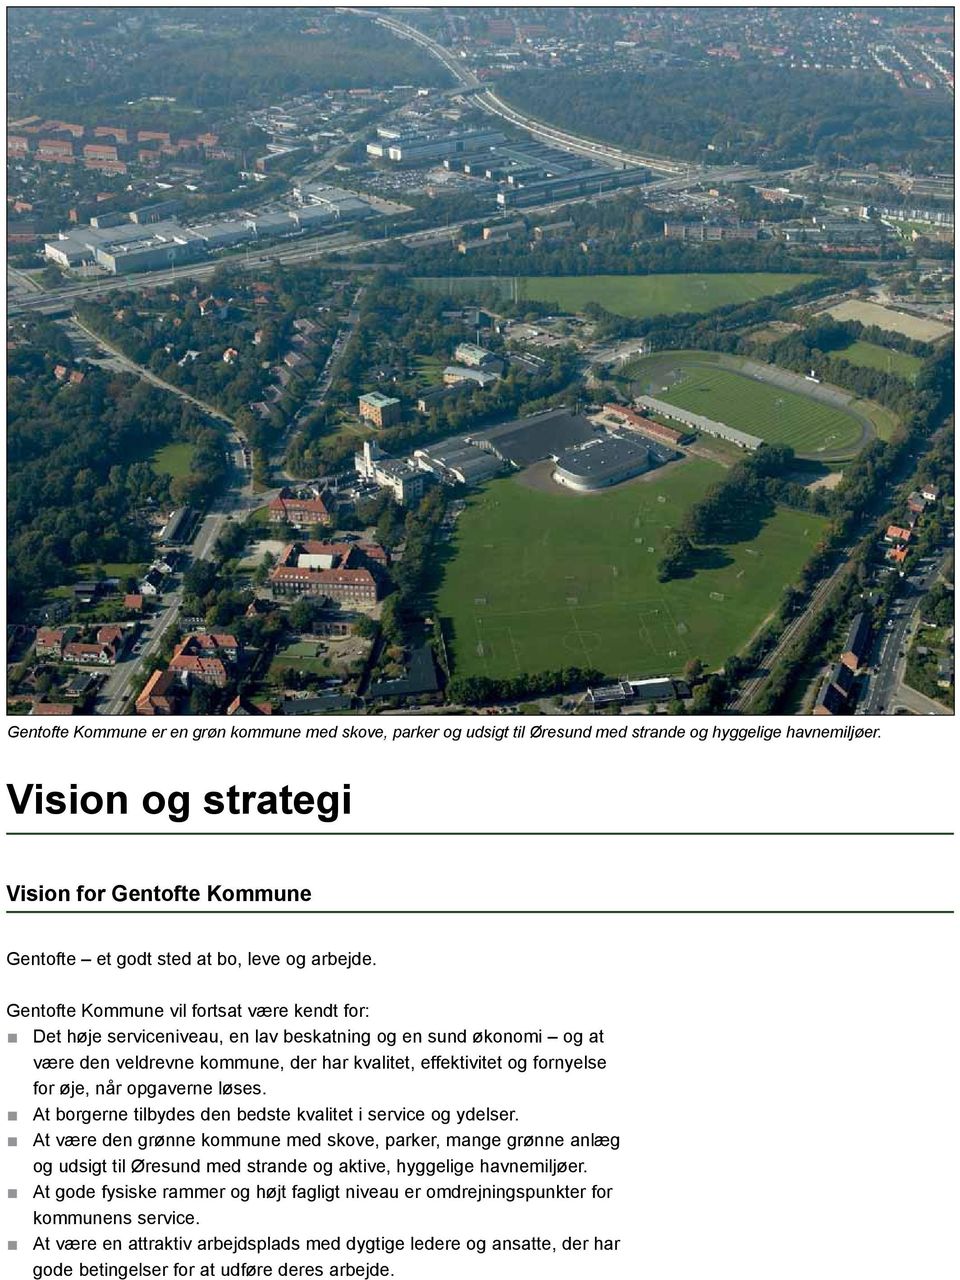 Gentofte Kommune vil fortsat være kendt for: < < Det høje serviceniveau, en lav beskatning og en sund økonomi og at være den veldrevne kommune, der har kvalitet, effektivitet og fornyelse for øje,